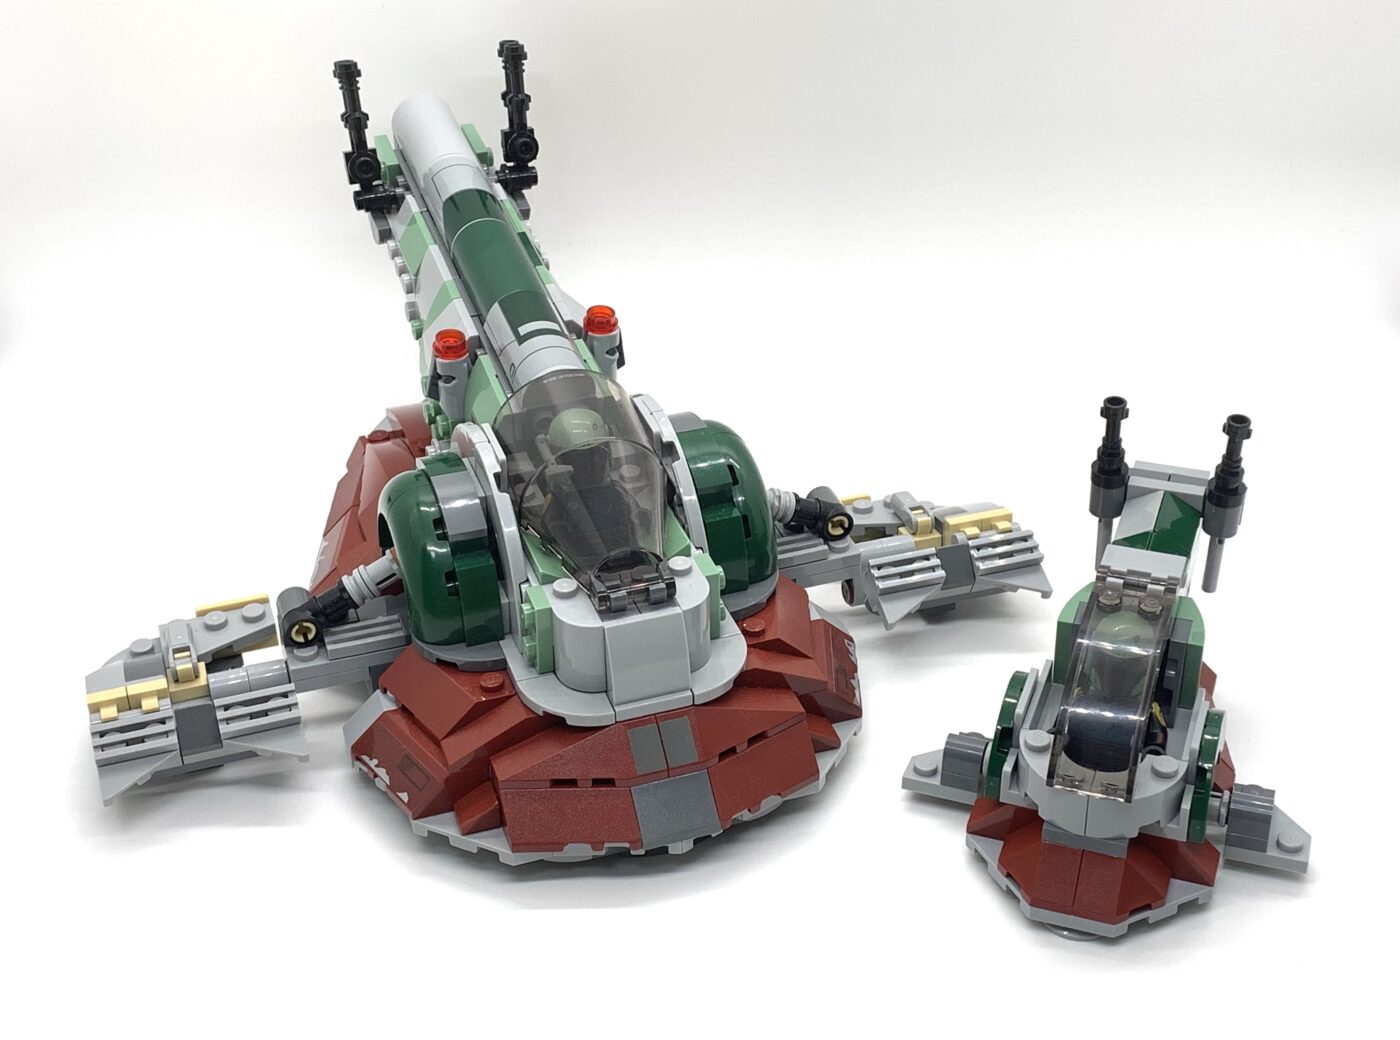 Review: LEGO 75344 Boba Fett's Starship Microfighter - Jay's Brick Blog